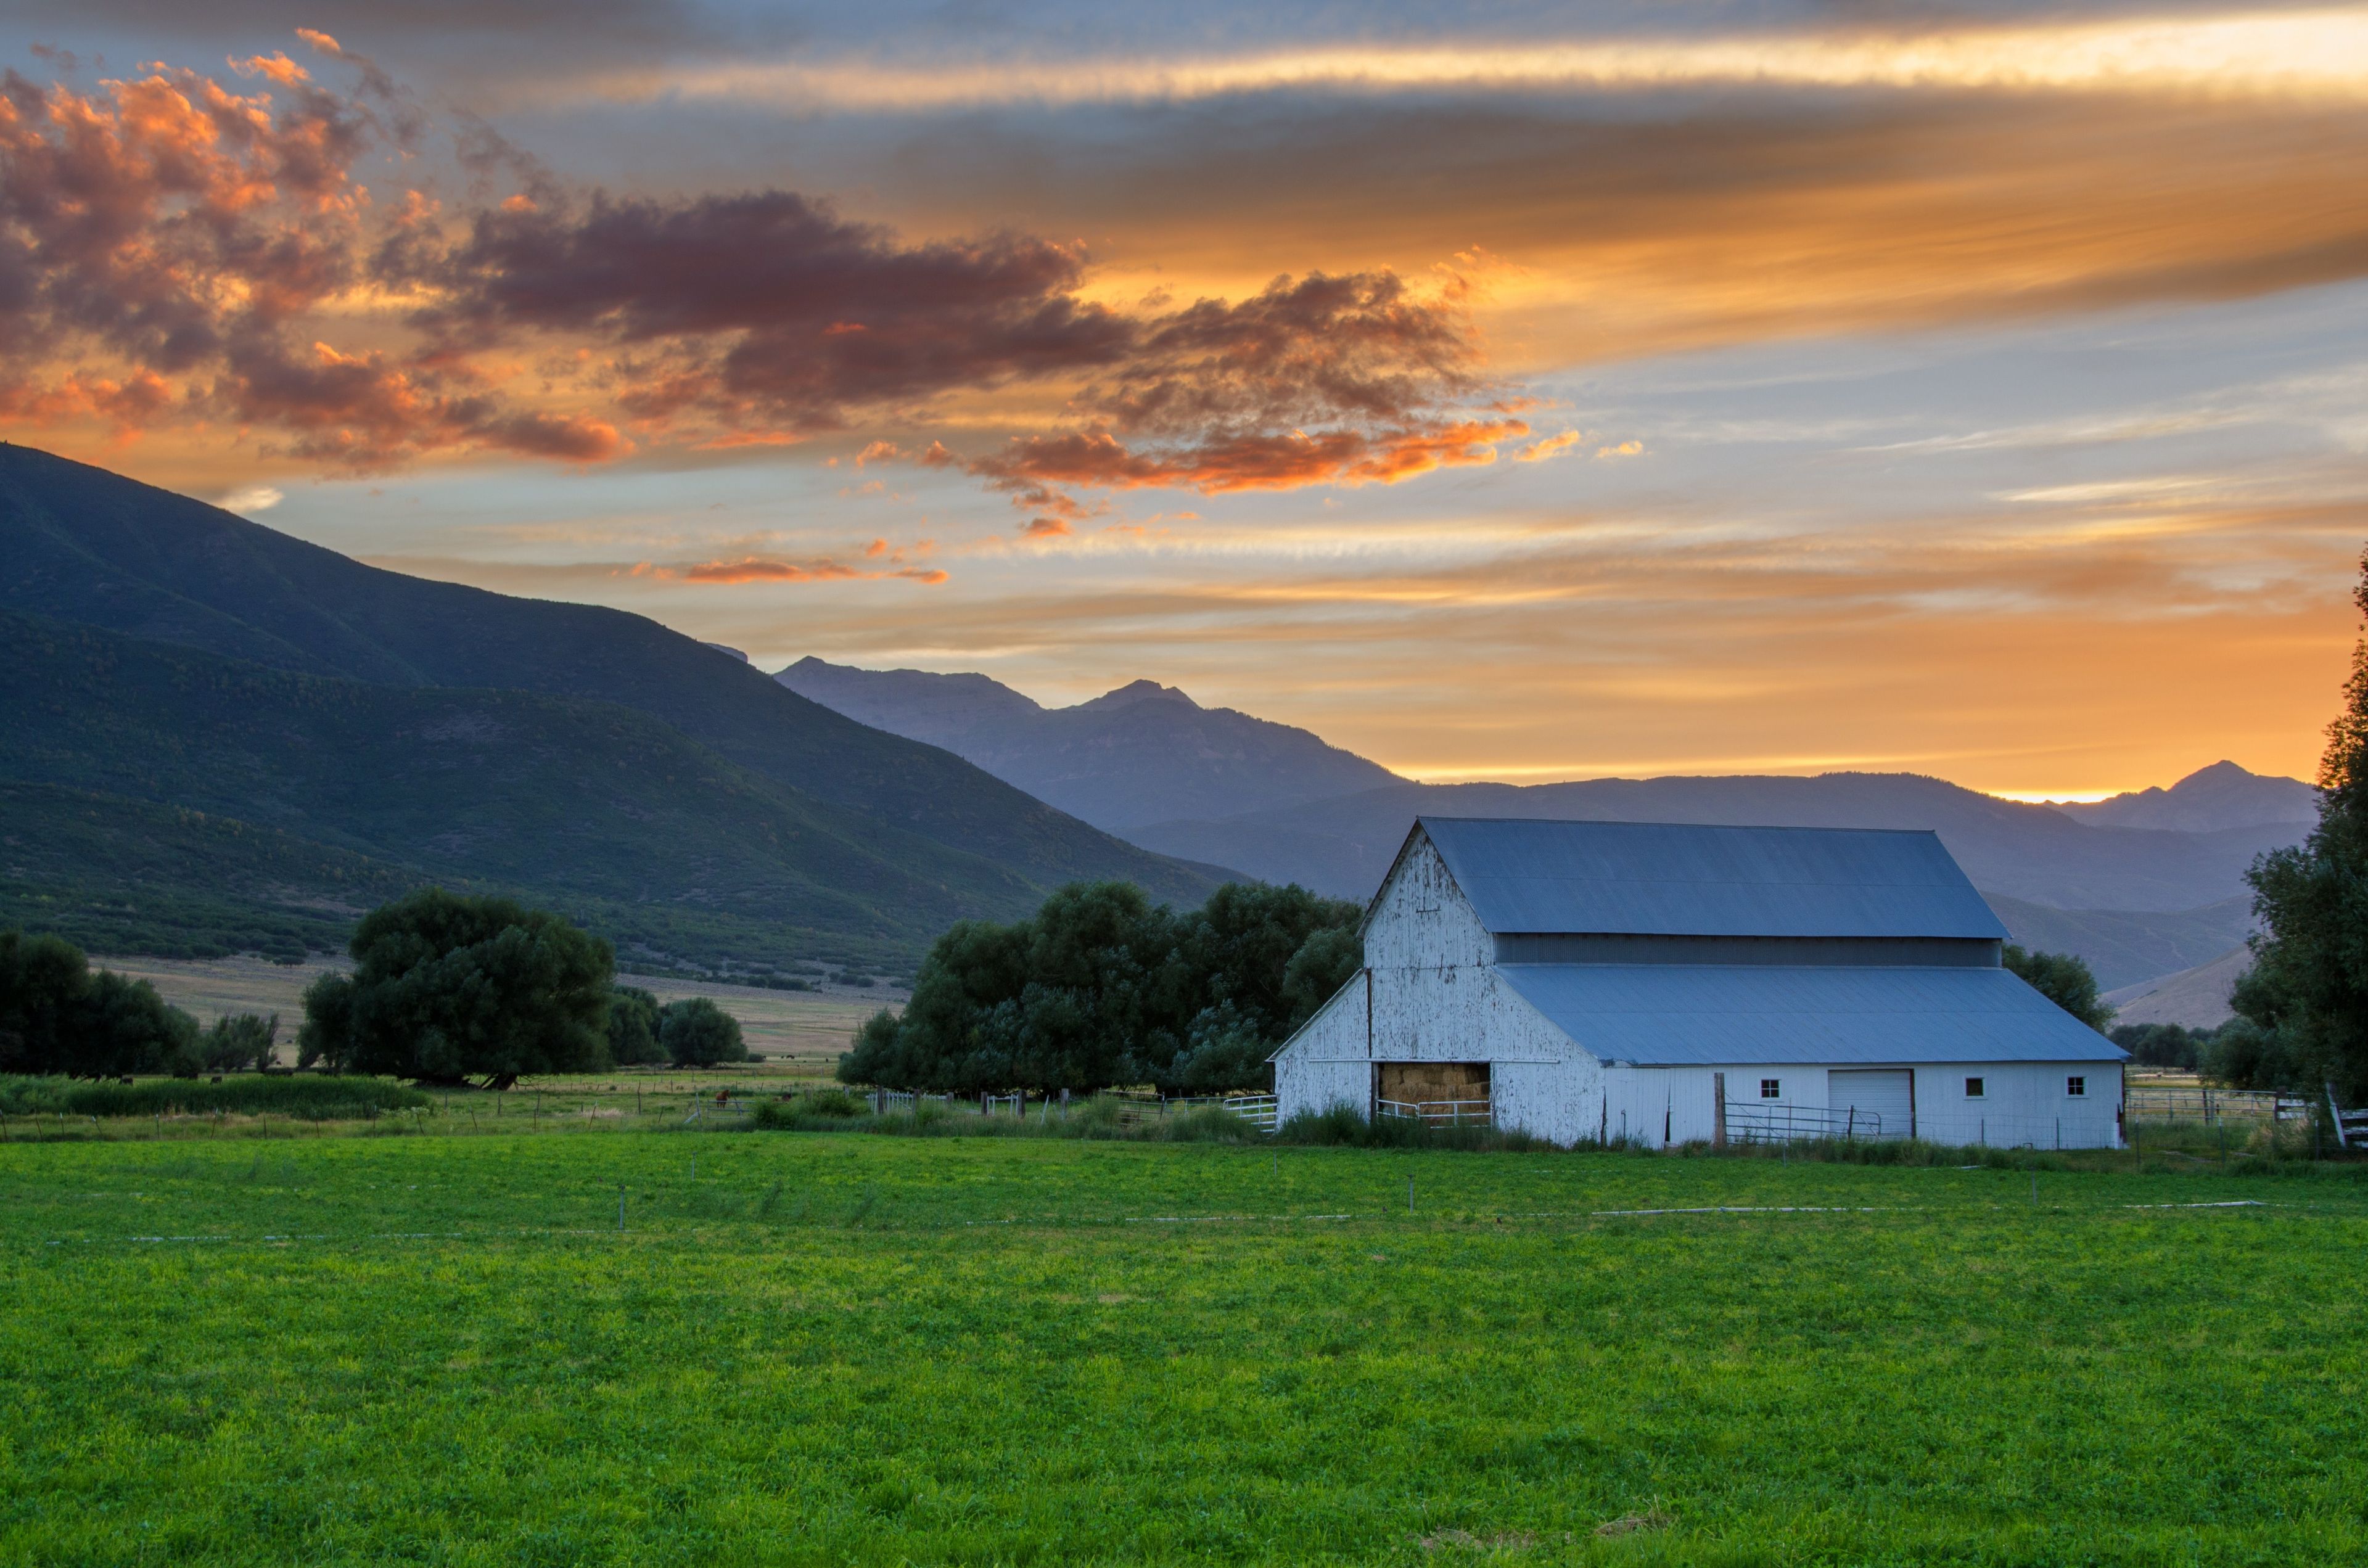 A sunset over farmland and a barn.